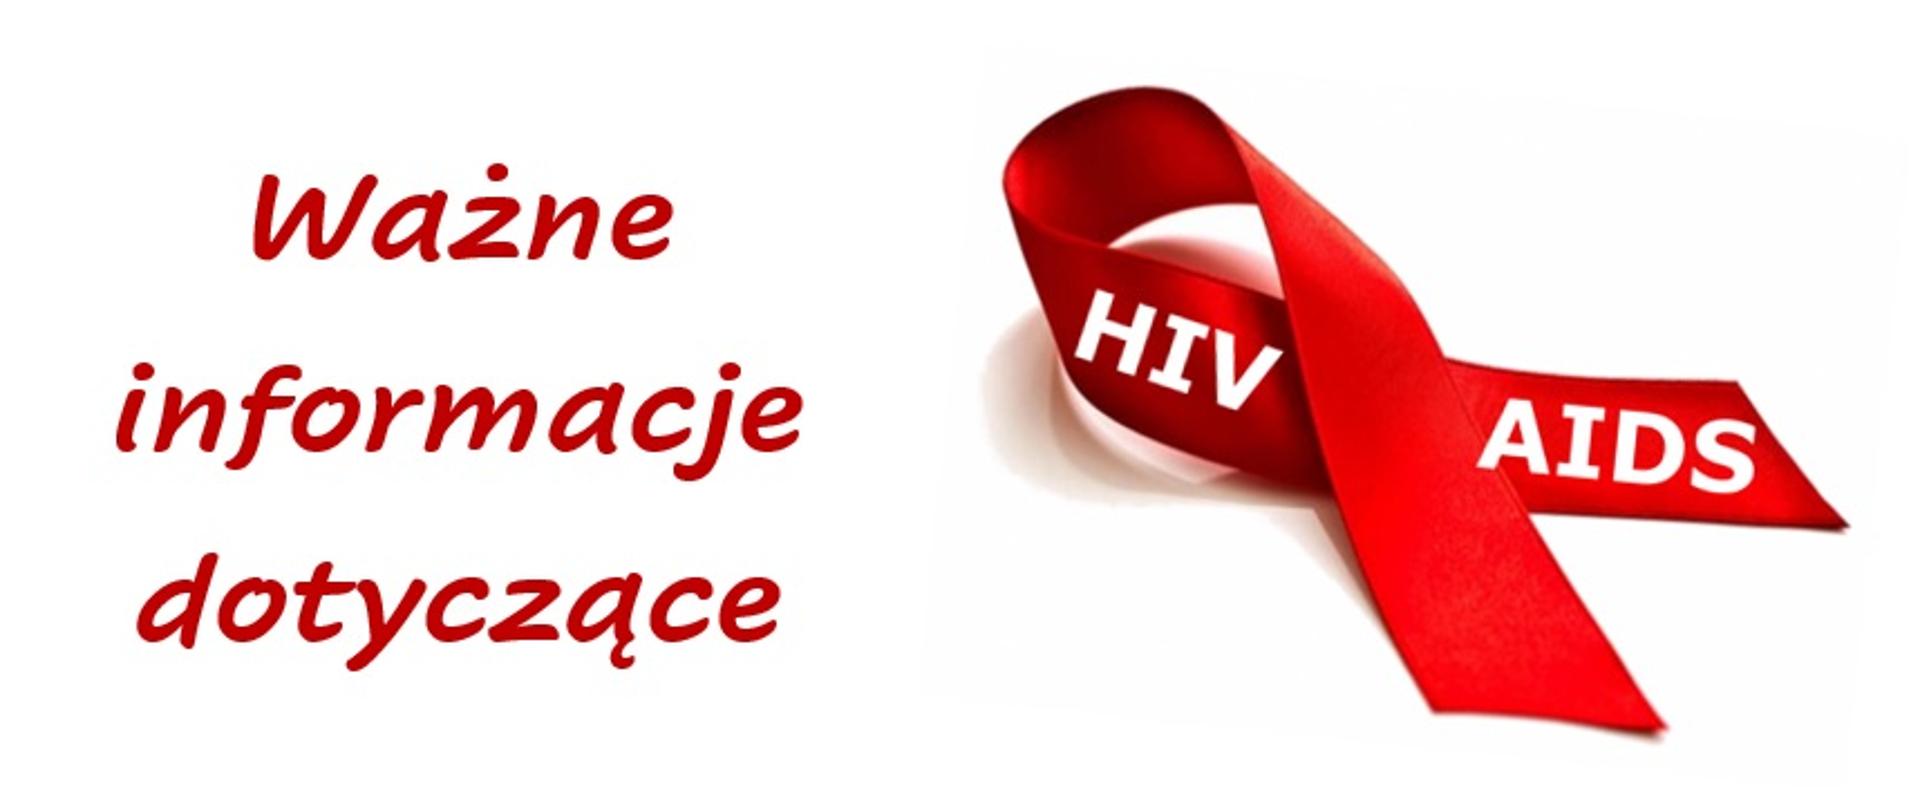 HIV_AIDS-informacje